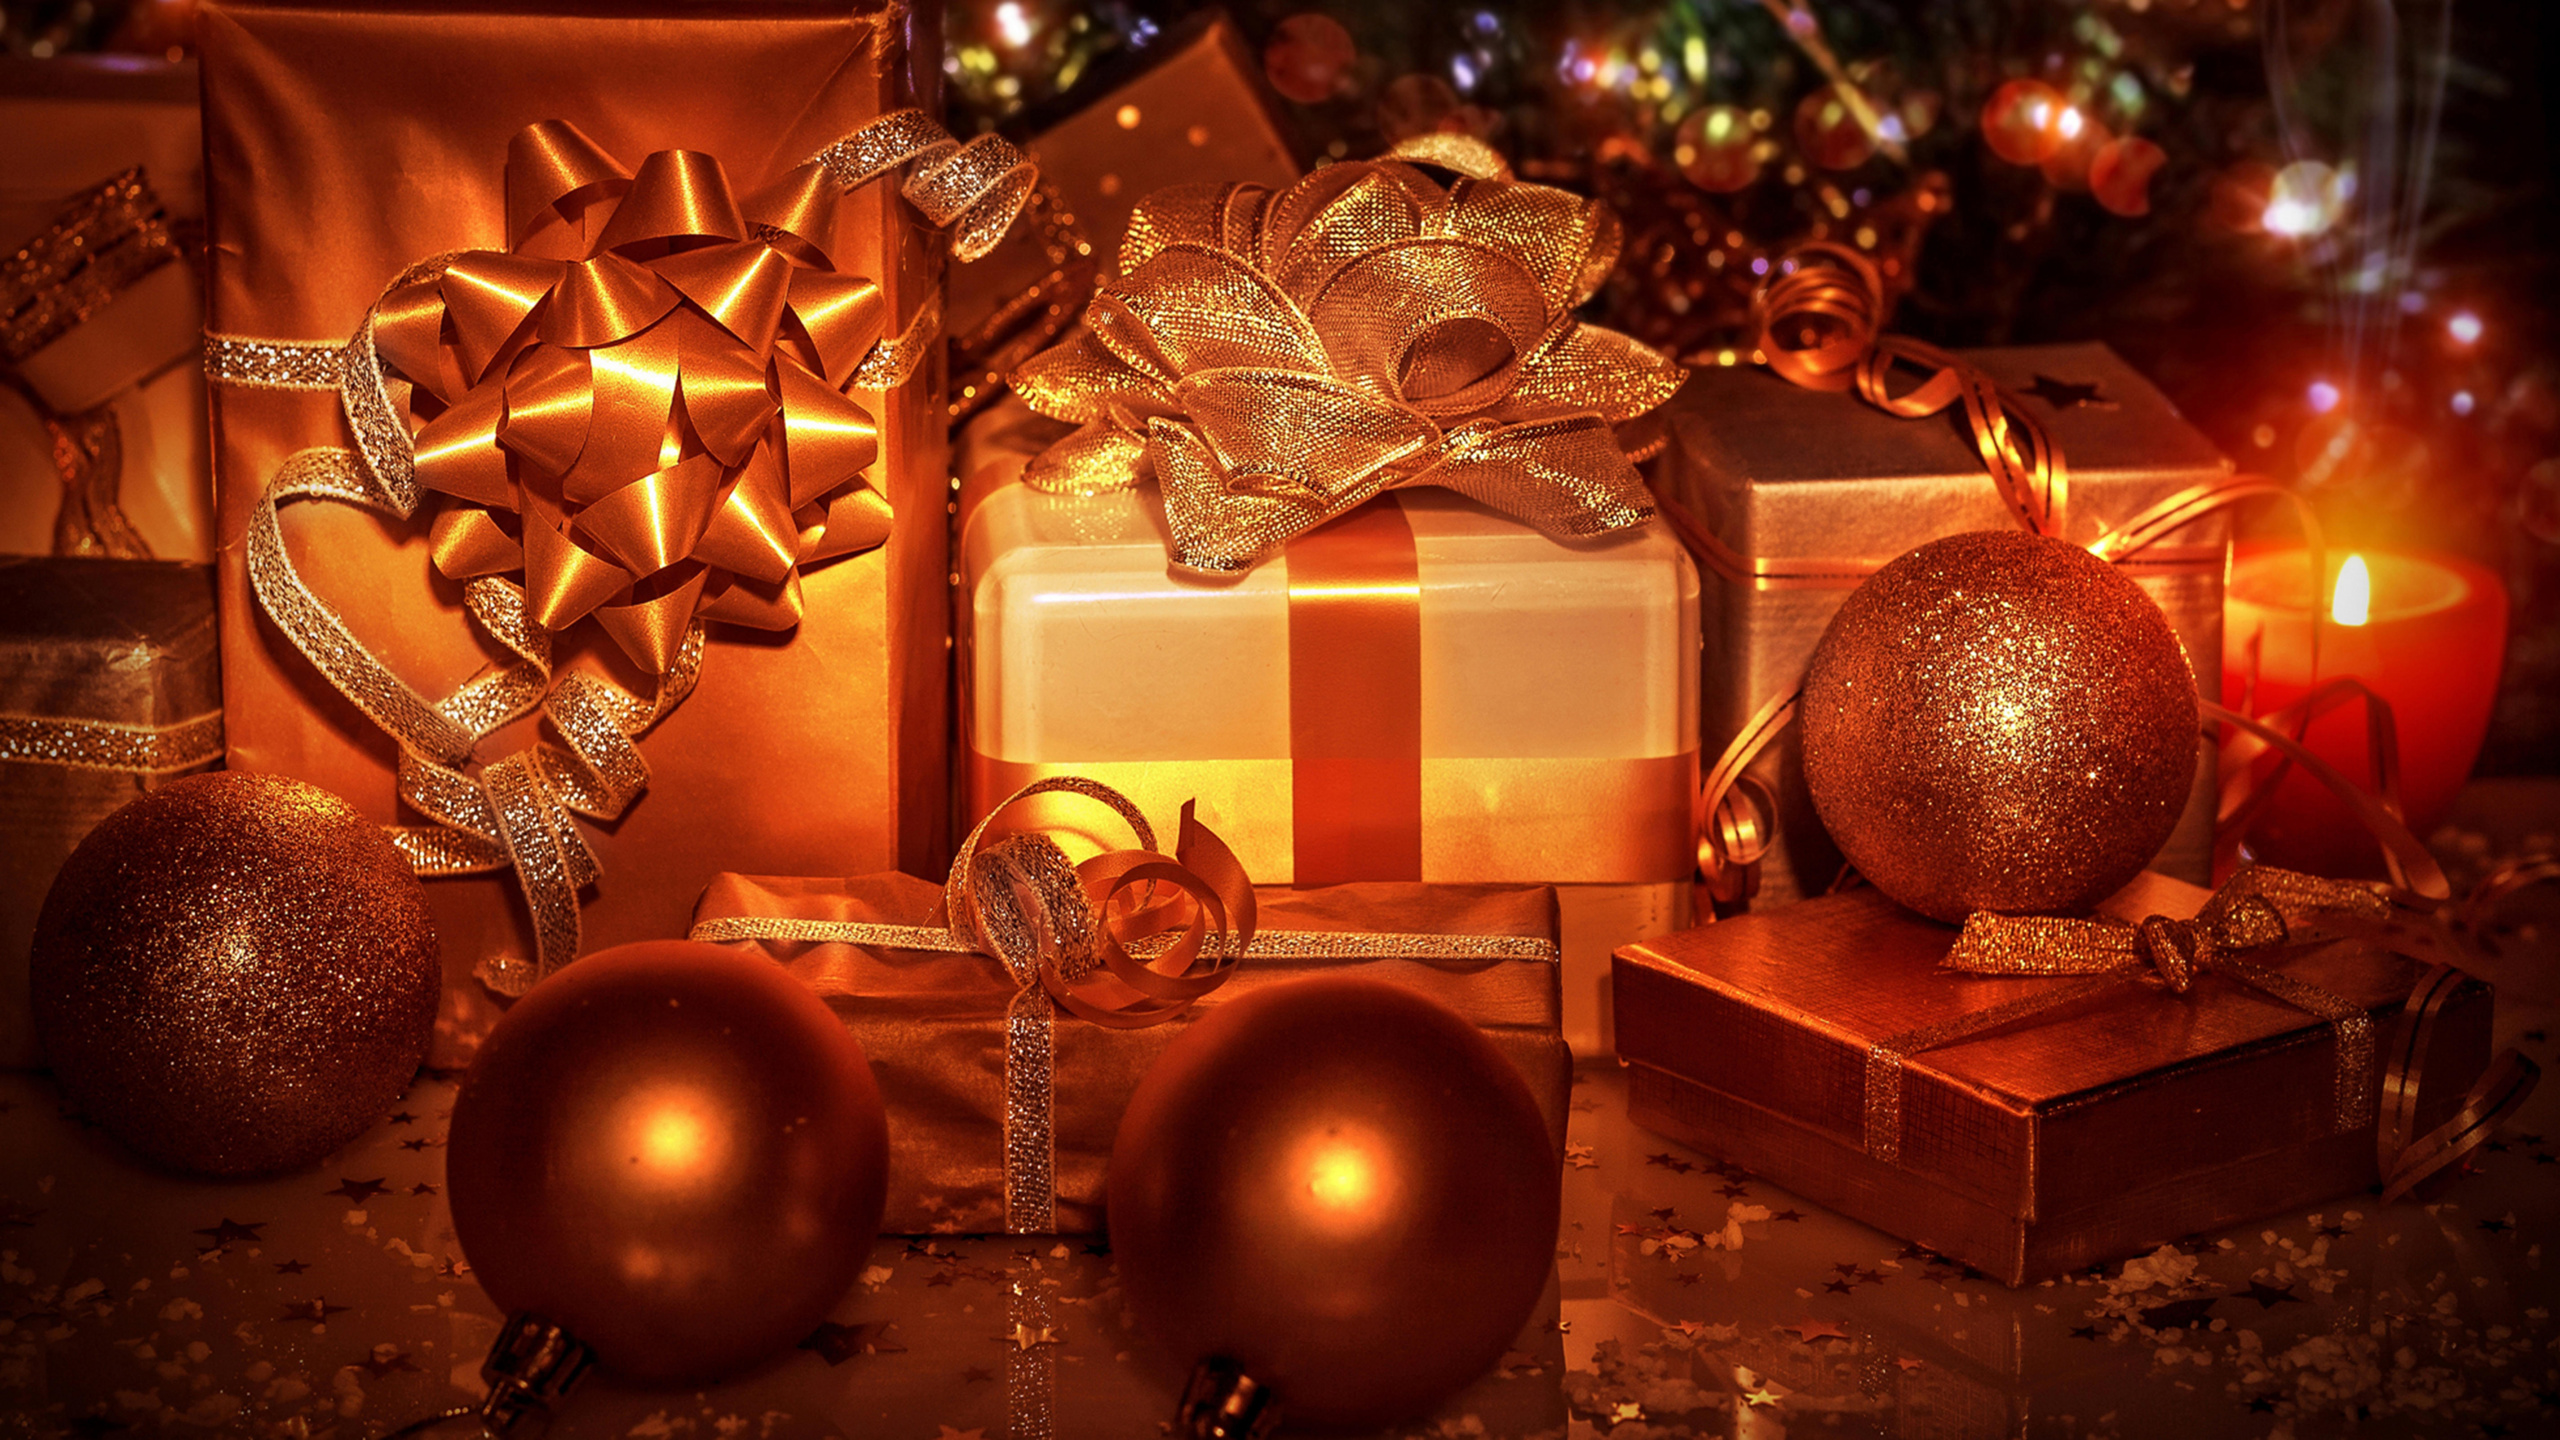 Weihnachten, Christmas Ornament, Weihnachtsbaum, Weihnachtsgeschenk, Weihnachtsdekoration. Wallpaper in 2560x1440 Resolution